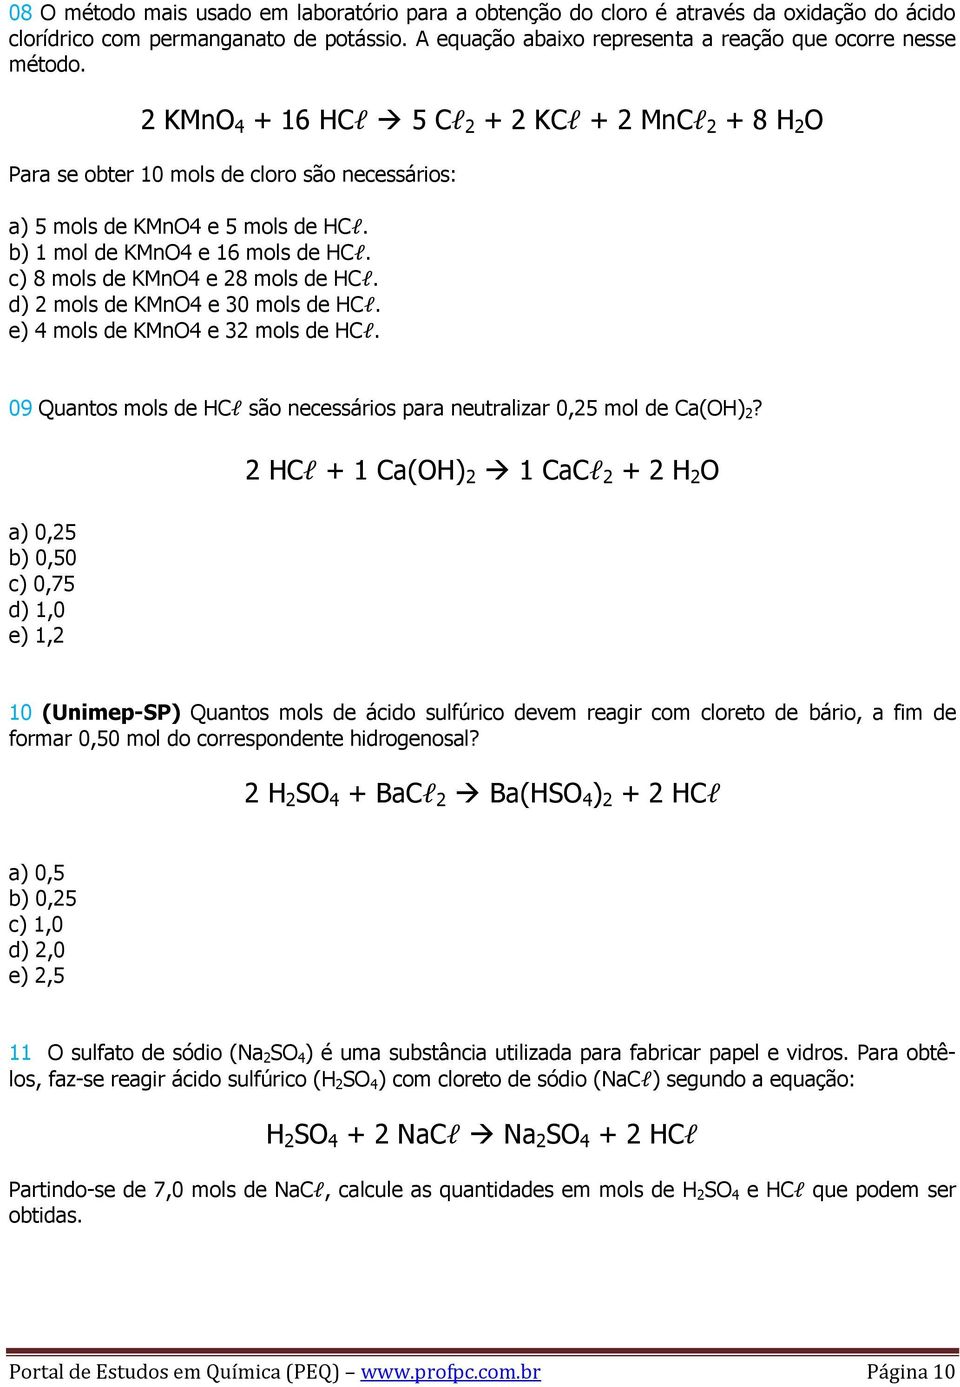 c) 8 mols de KMnO4 e 28 mols de HCl. d) 2 mols de KMnO4 e 30 mols de HCl. e) 4 mols de KMnO4 e 32 mols de HCl. 09 Quantos mols de HCl são necessários para neutralizar 0,25 mol de Ca(OH) 2?